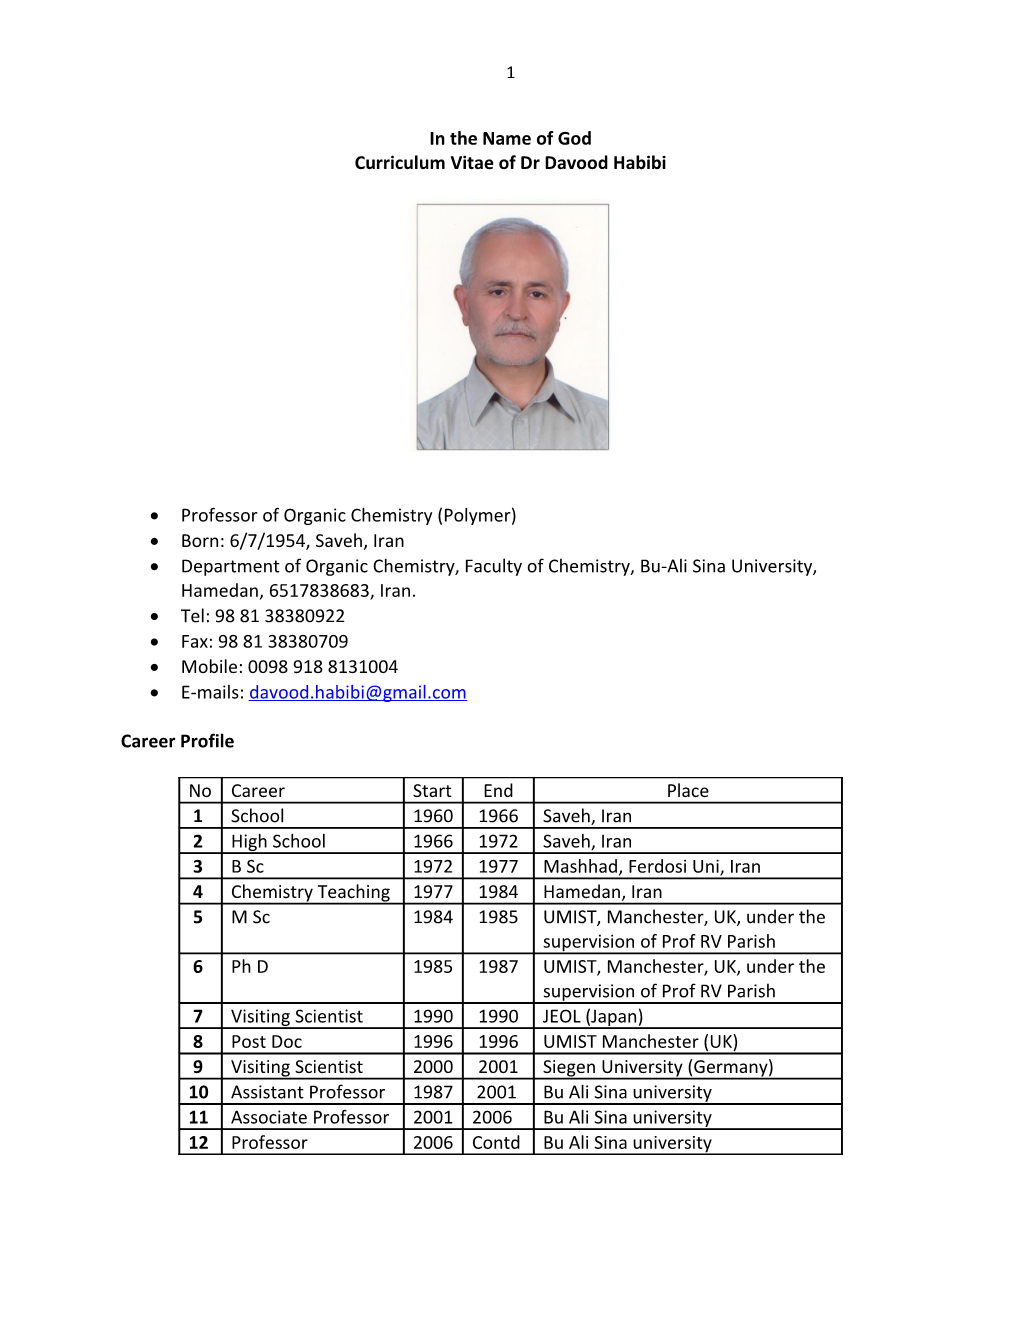 Curriculum Vitaeof Dr Davood Habibi